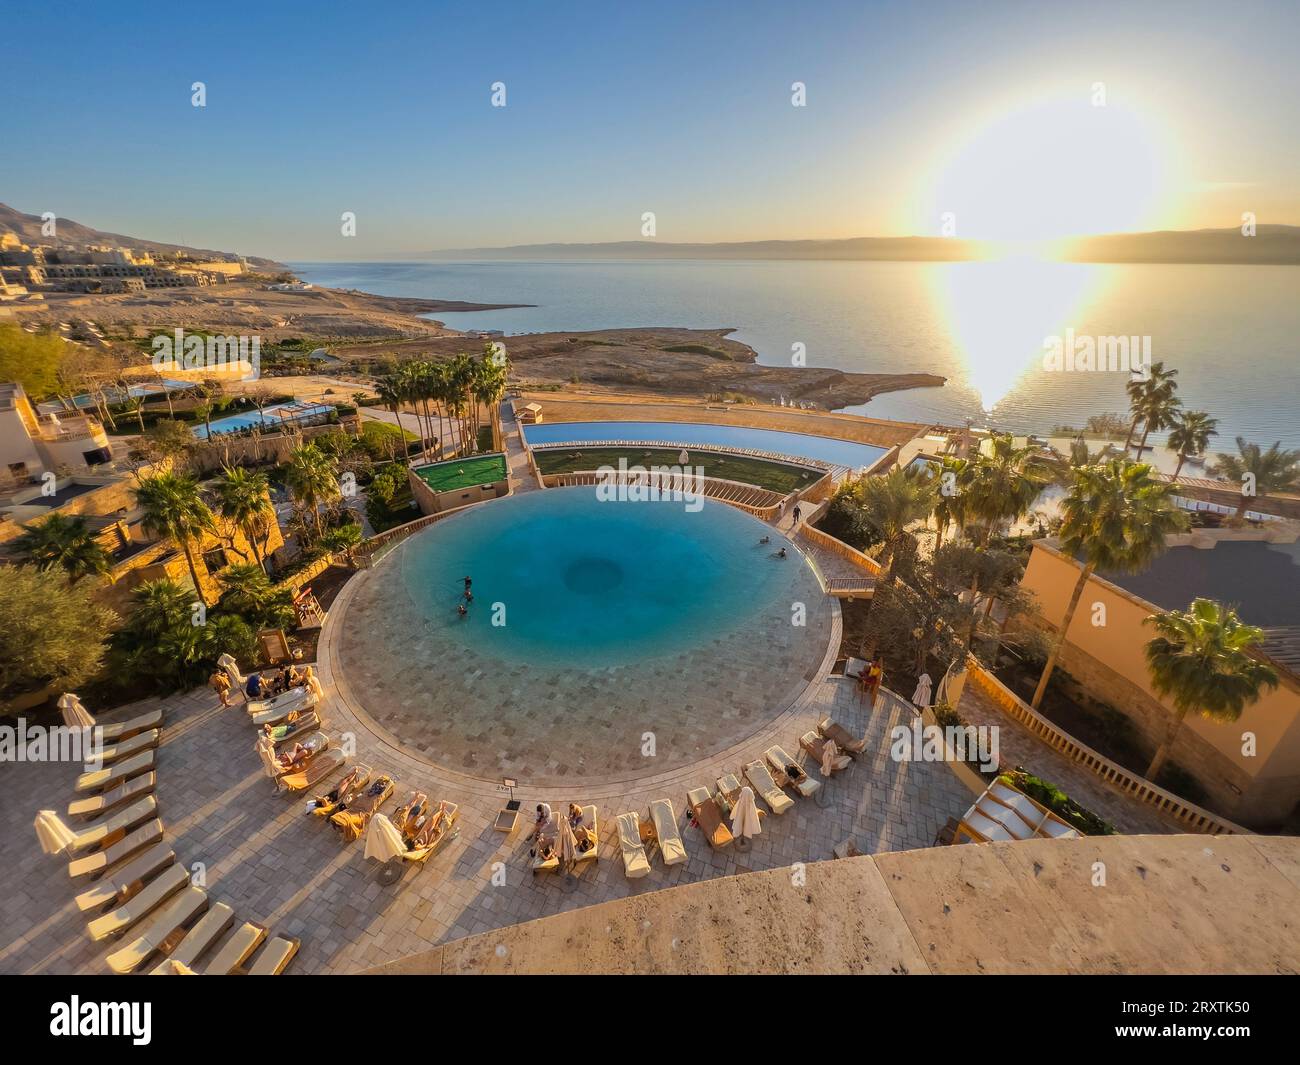 Tramonto al Kempinski Hotel Ishtar, un resort di lusso a cinque stelle sul Mar morto ispirato ai Giardini sospesi di Babilonia, Giordania, Medio Oriente Foto Stock